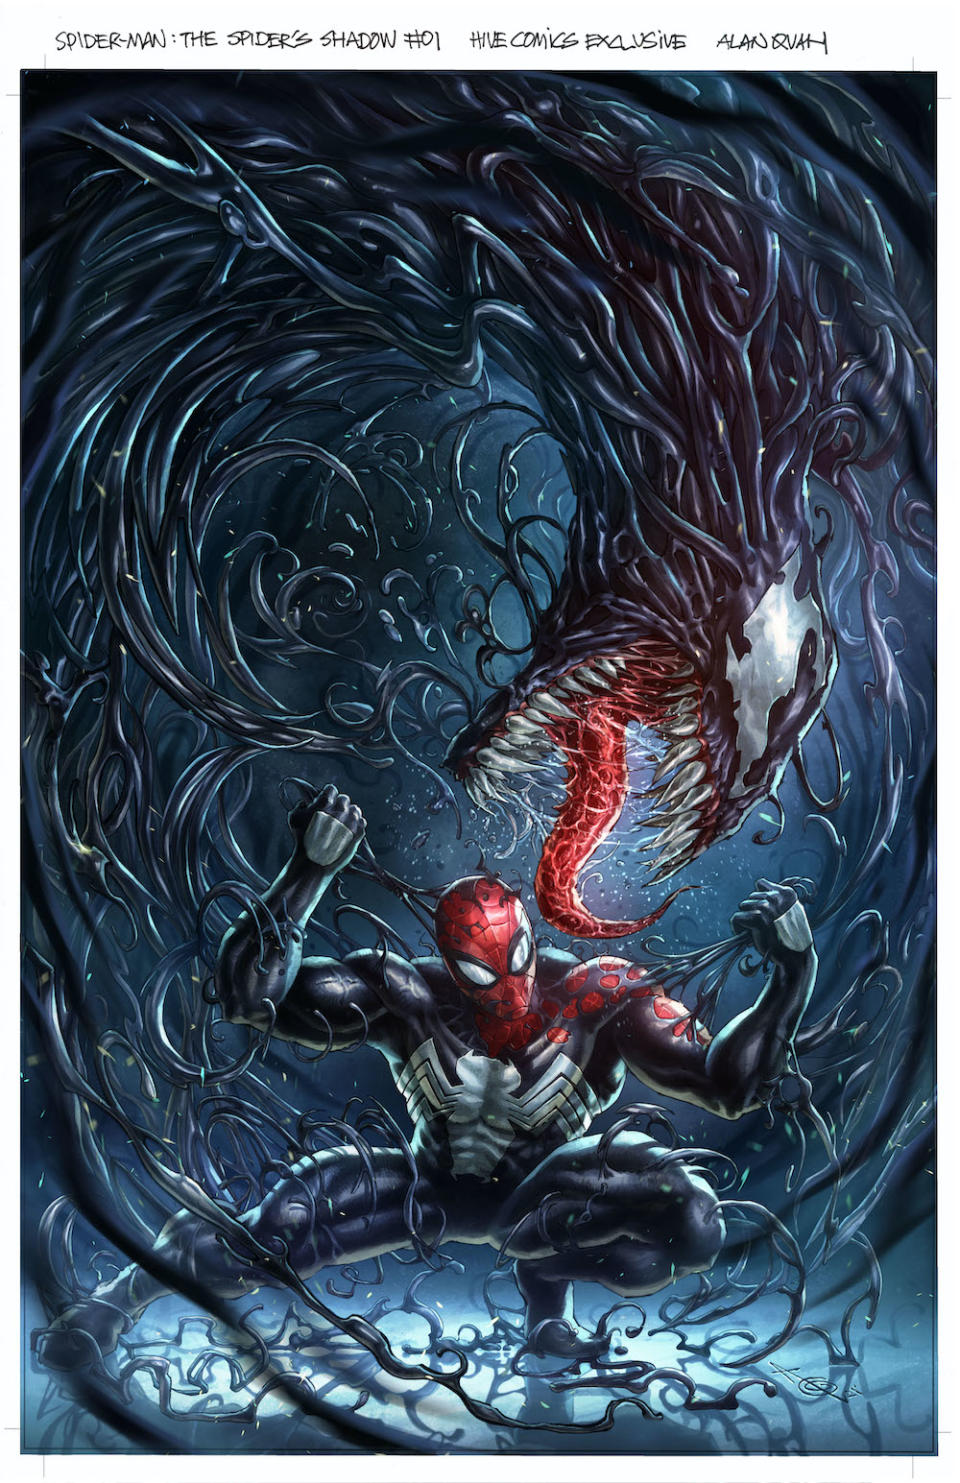 Spiderman: Spider&#39;s Shadow #1, Hive Comics Exclusive. (Alan Quah & Marvel Comics)